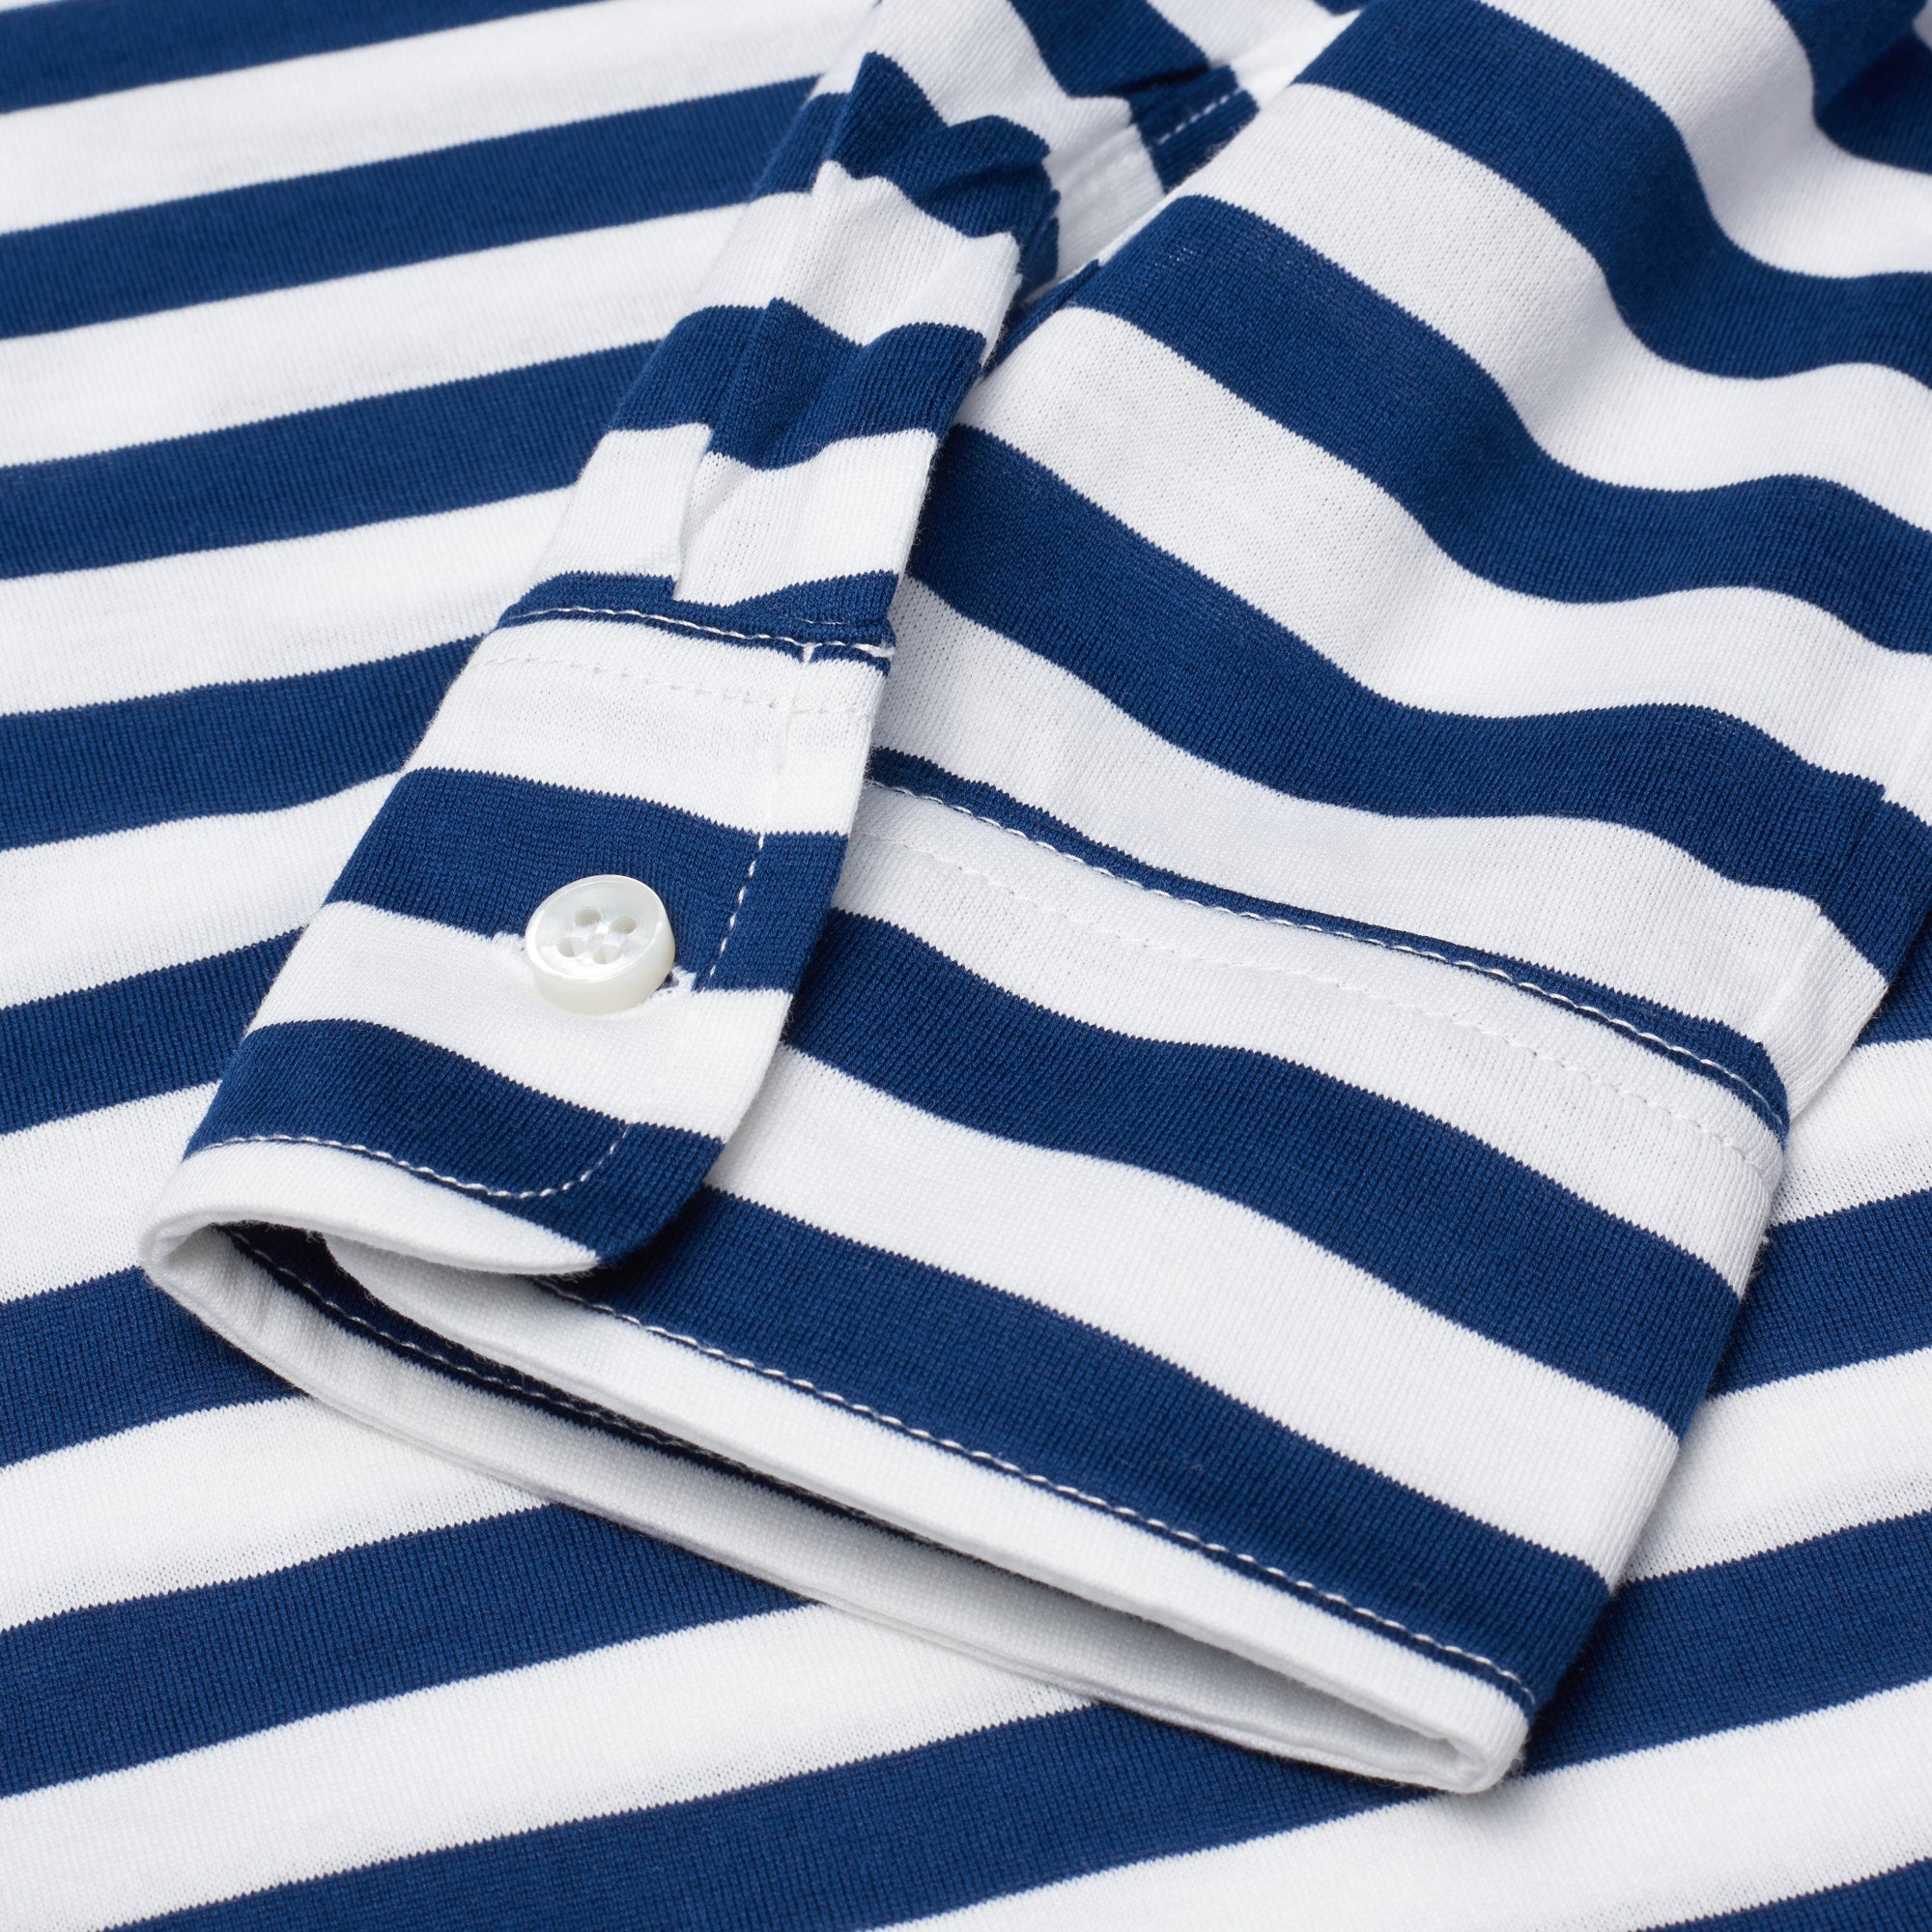 FEDELI "Libeccio" Navy Blue Striped Cotton Jersey Long Sleeve Polo Shirt 56 NEW 2XL FEDELI